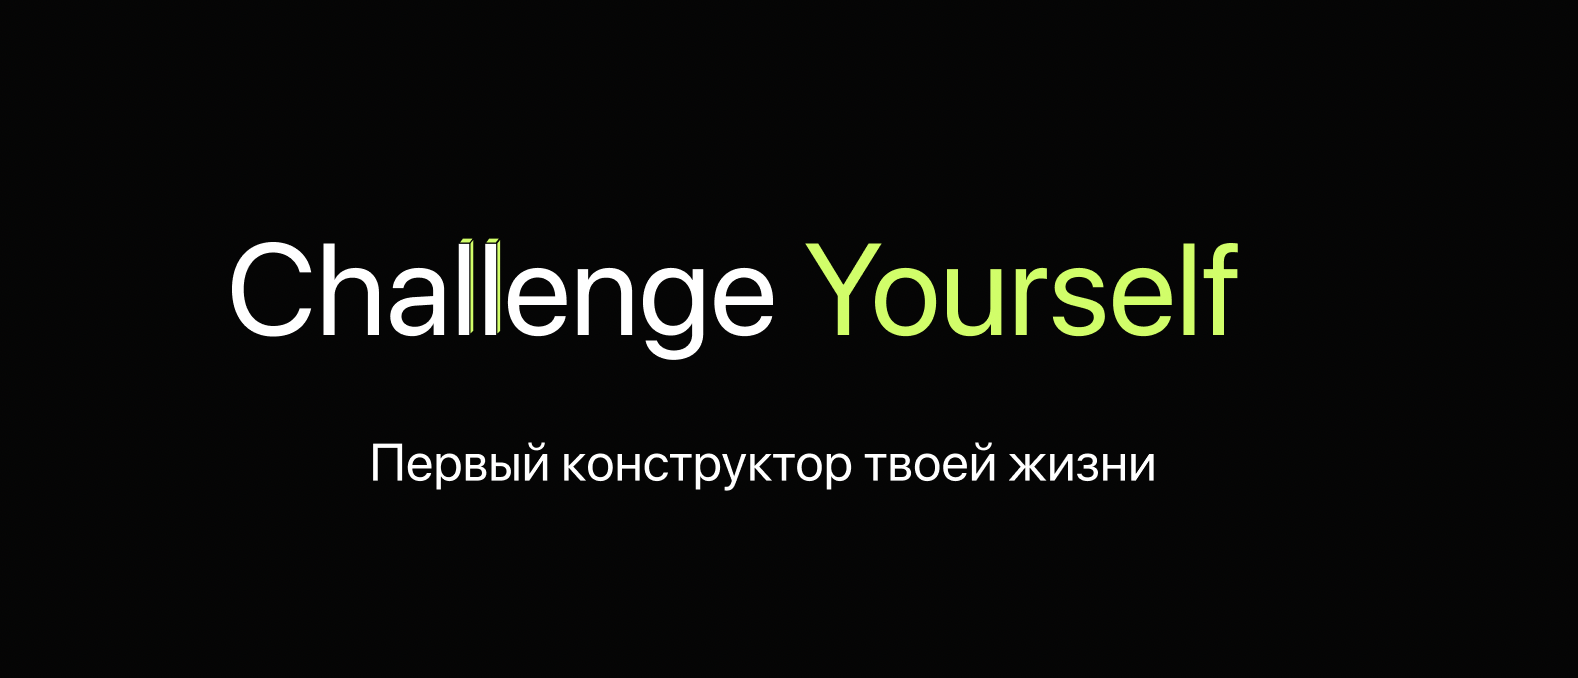 Challenge Yourself - конструктор твоей жизни